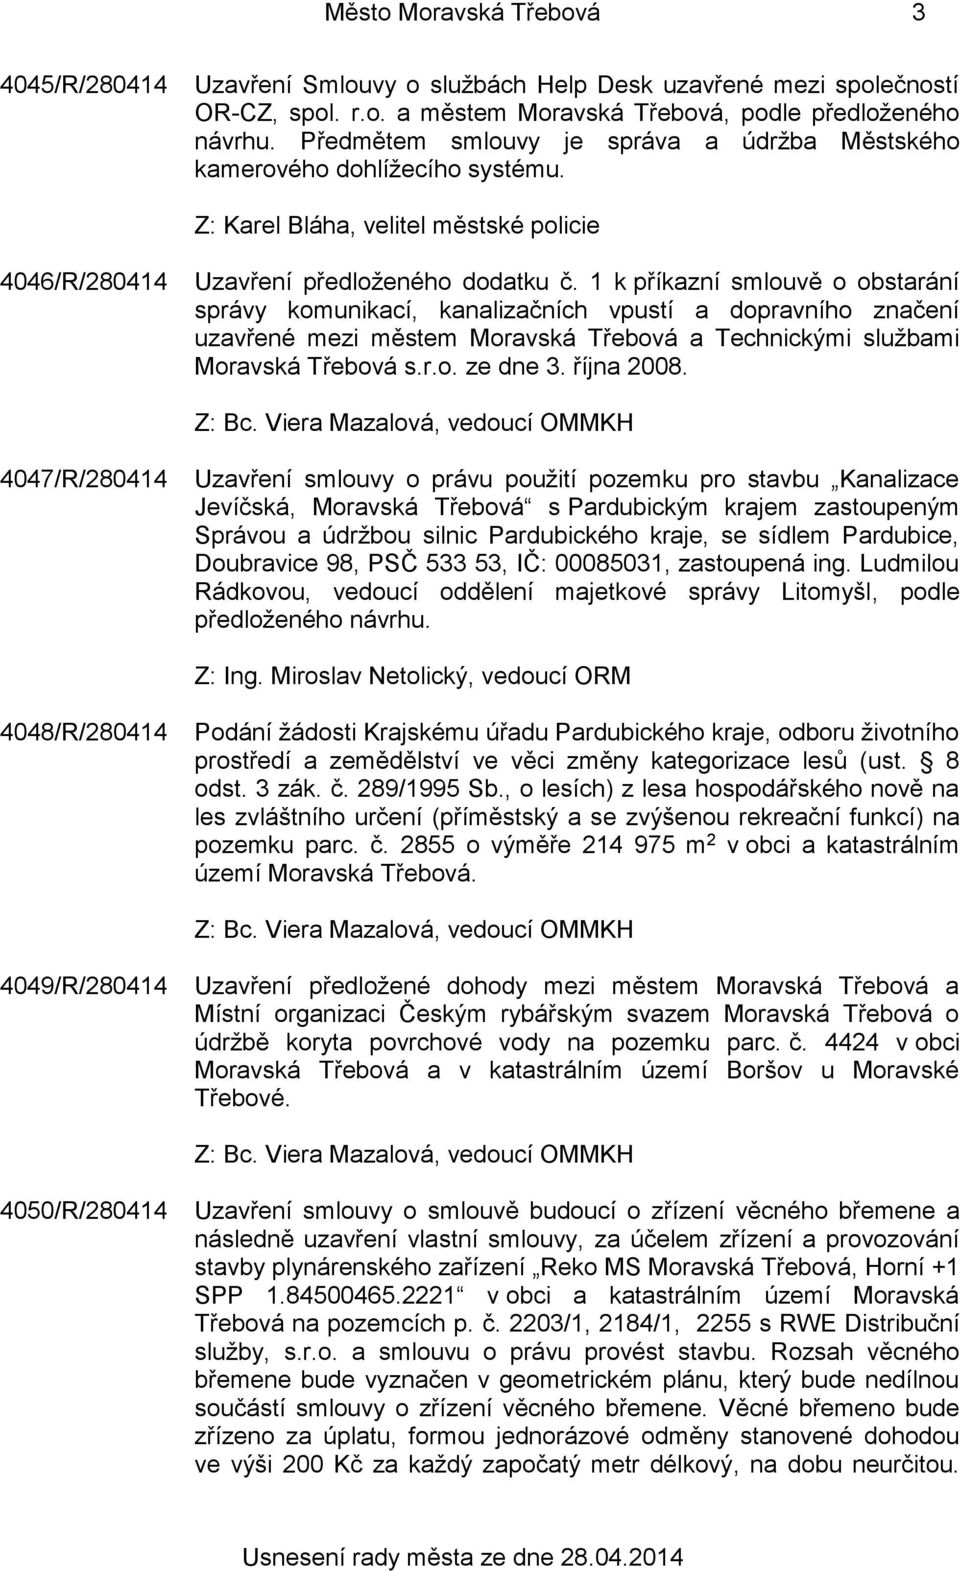 1 k příkazní smlouvě o obstarání správy komunikací, kanalizačních vpustí a dopravního značení uzavřené mezi městem Moravská Třebová a Technickými službami Moravská Třebová s.r.o. ze dne 3. října 2008.